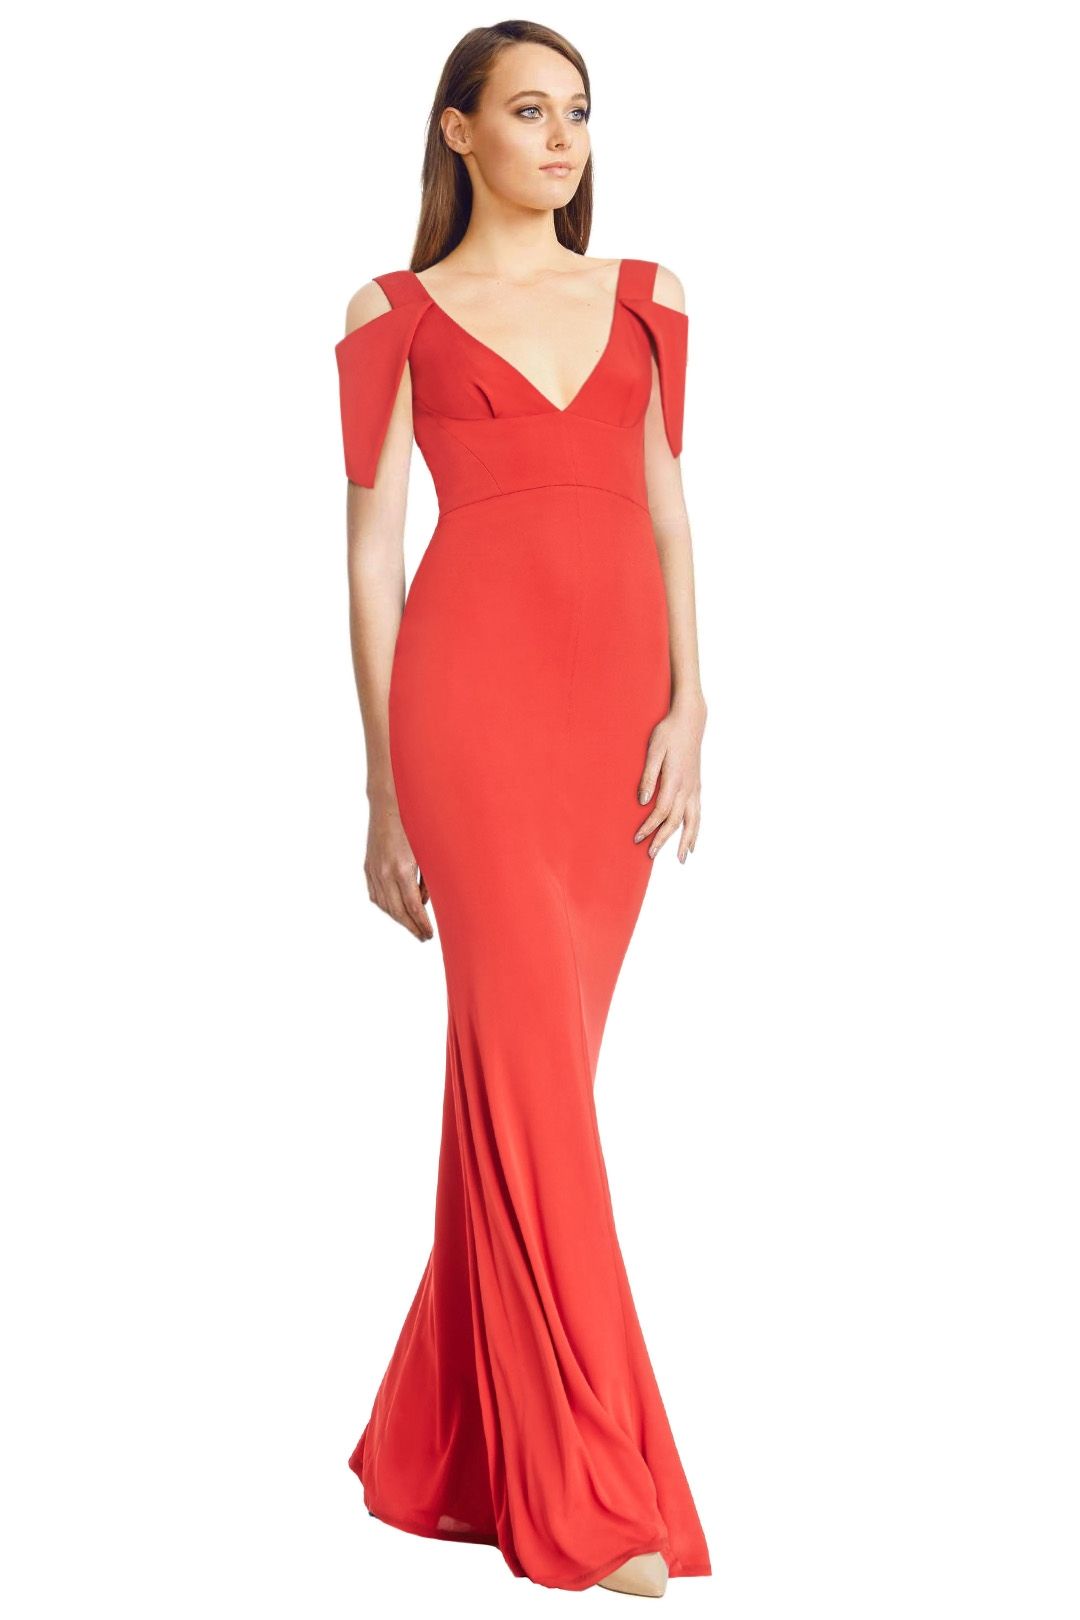 ABS Allen Schwartz Red Gown | Red gowns, Allen schwartz dress, Colorful  dresses